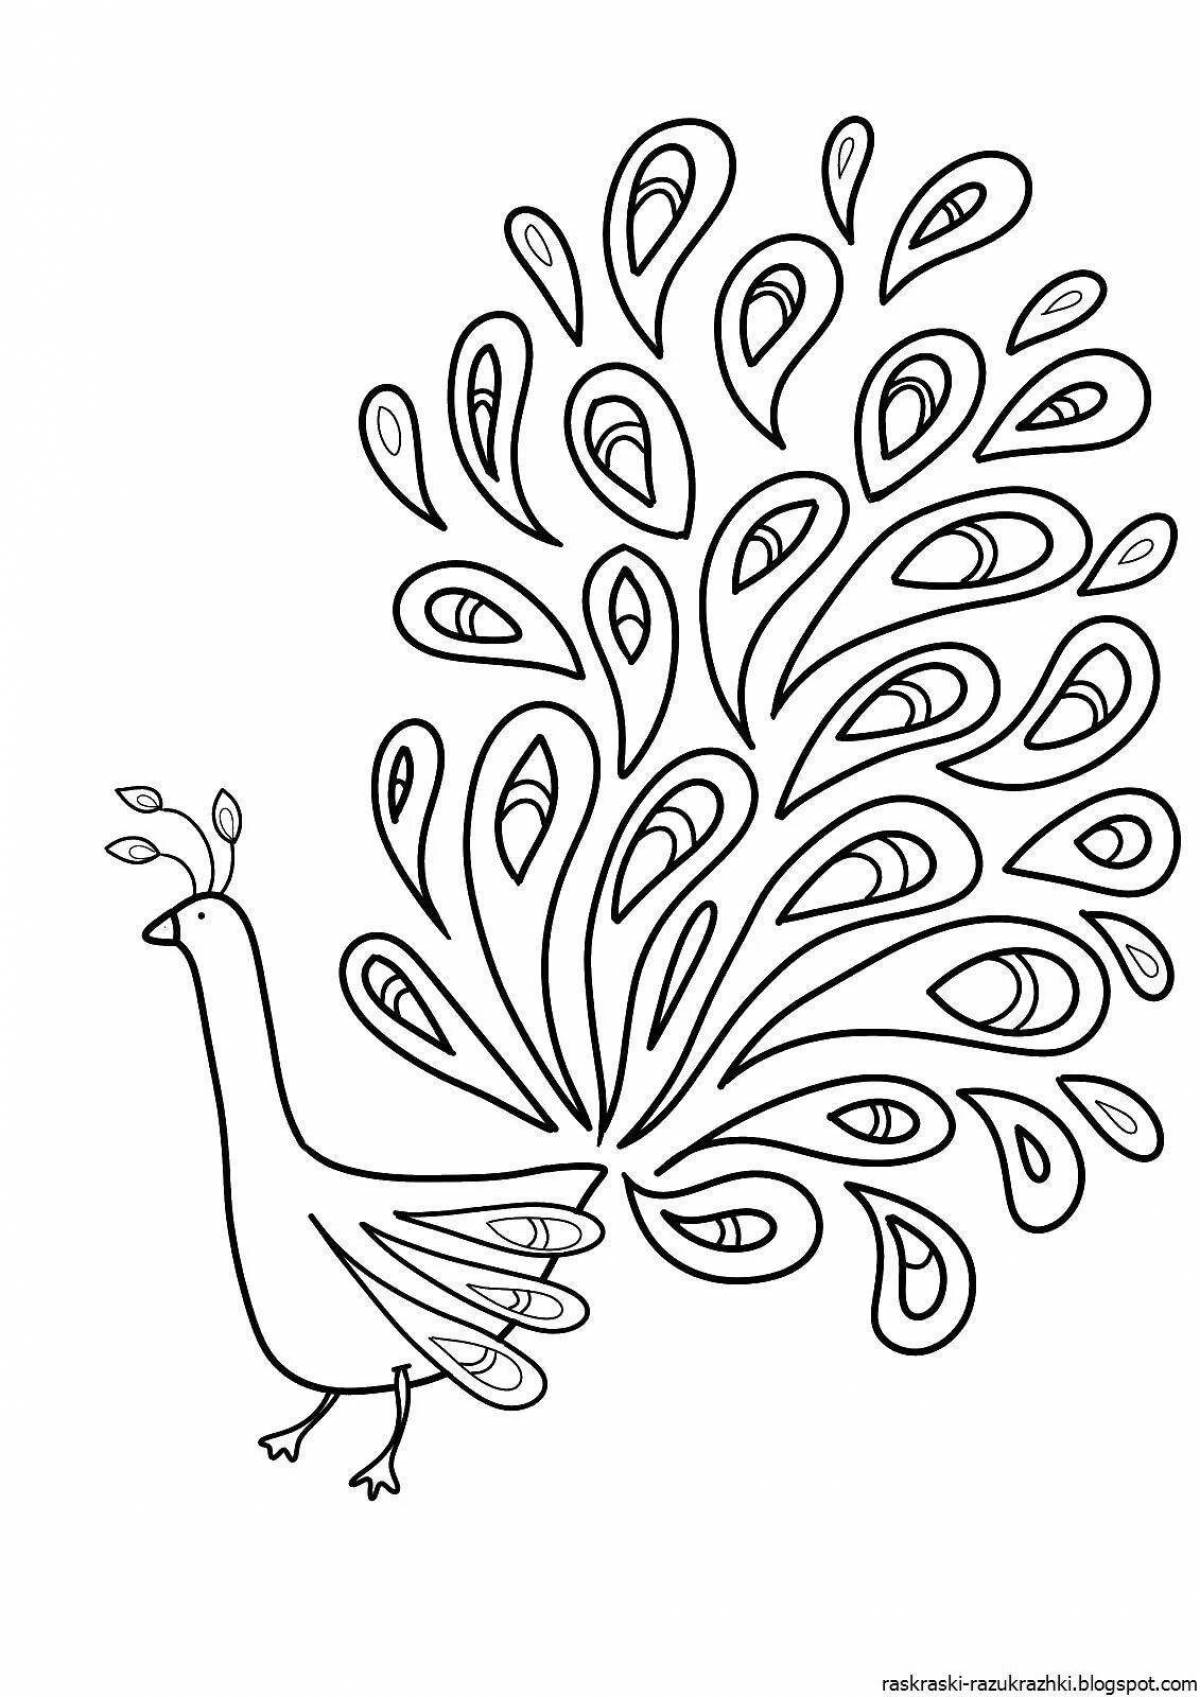 Tempting coloring book magic bird